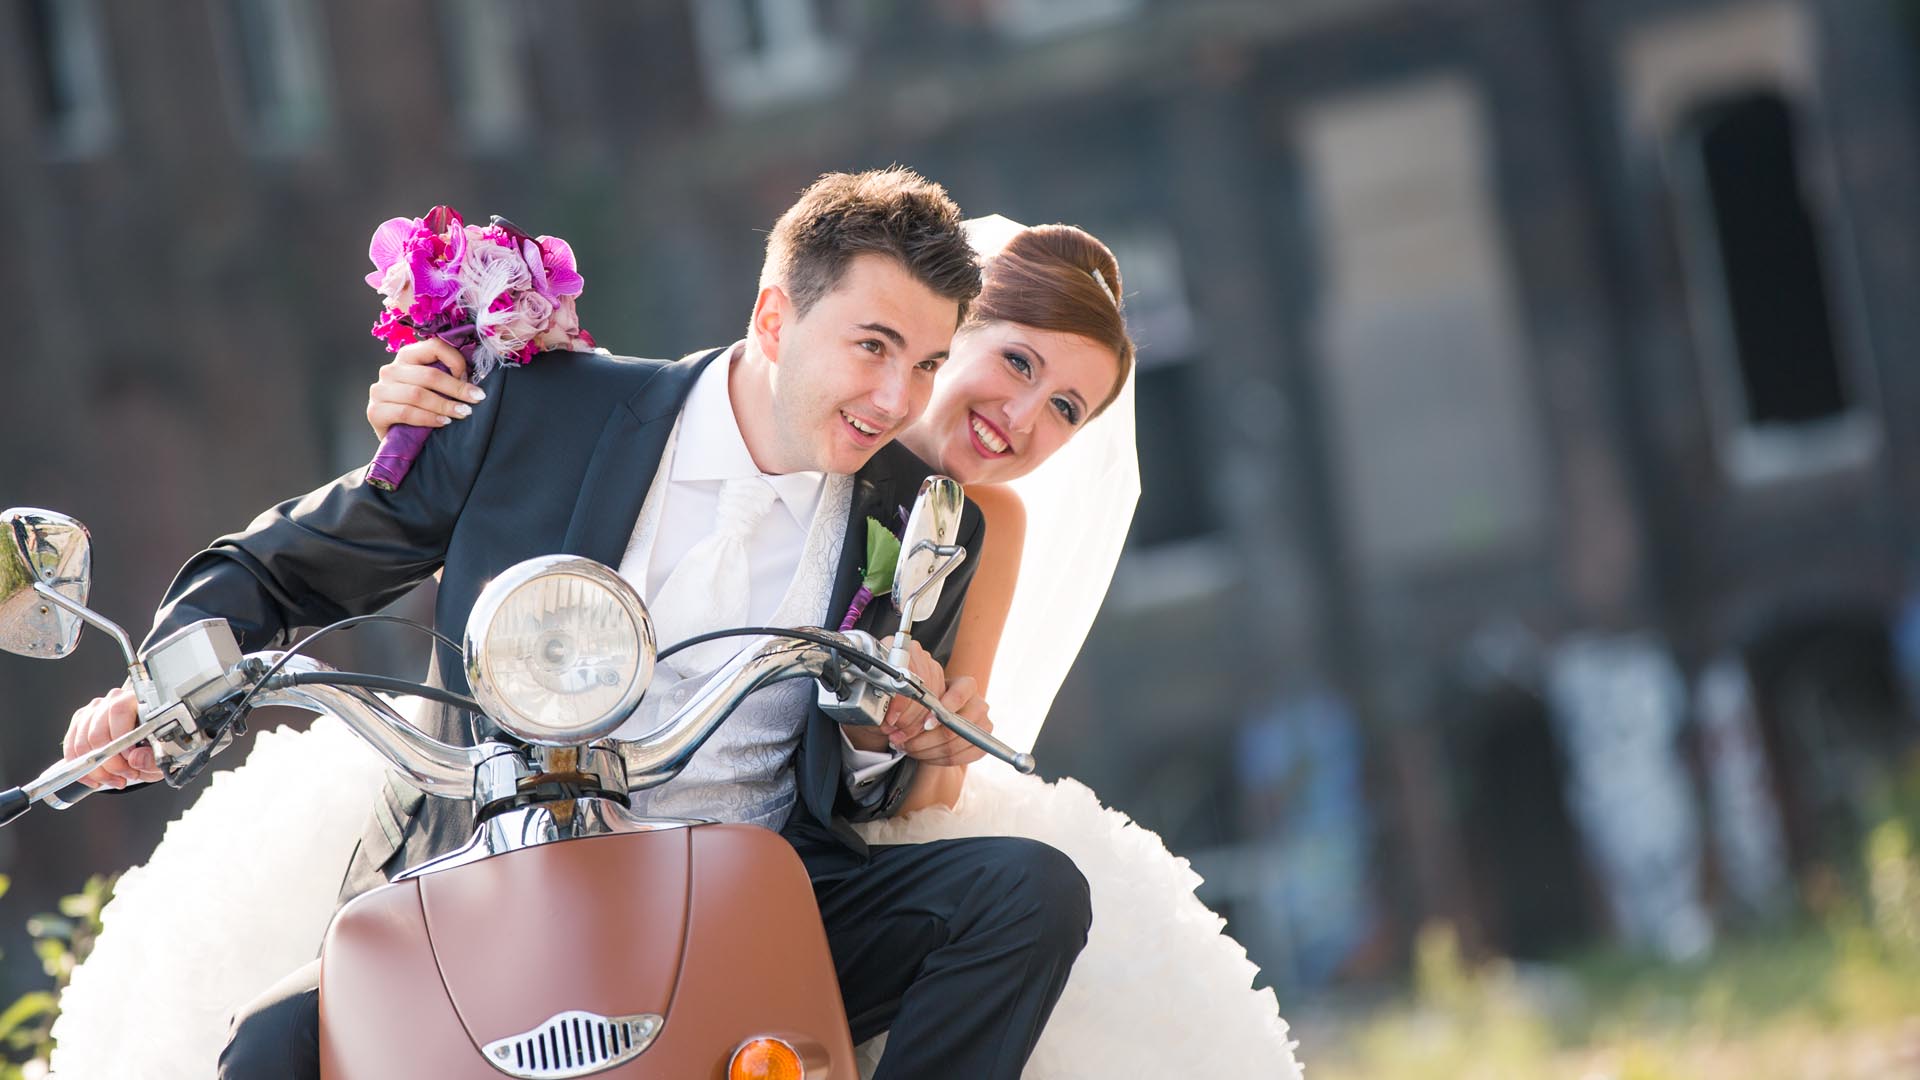 Brautpaar auf einem Mofa am Contigelände in Hannover